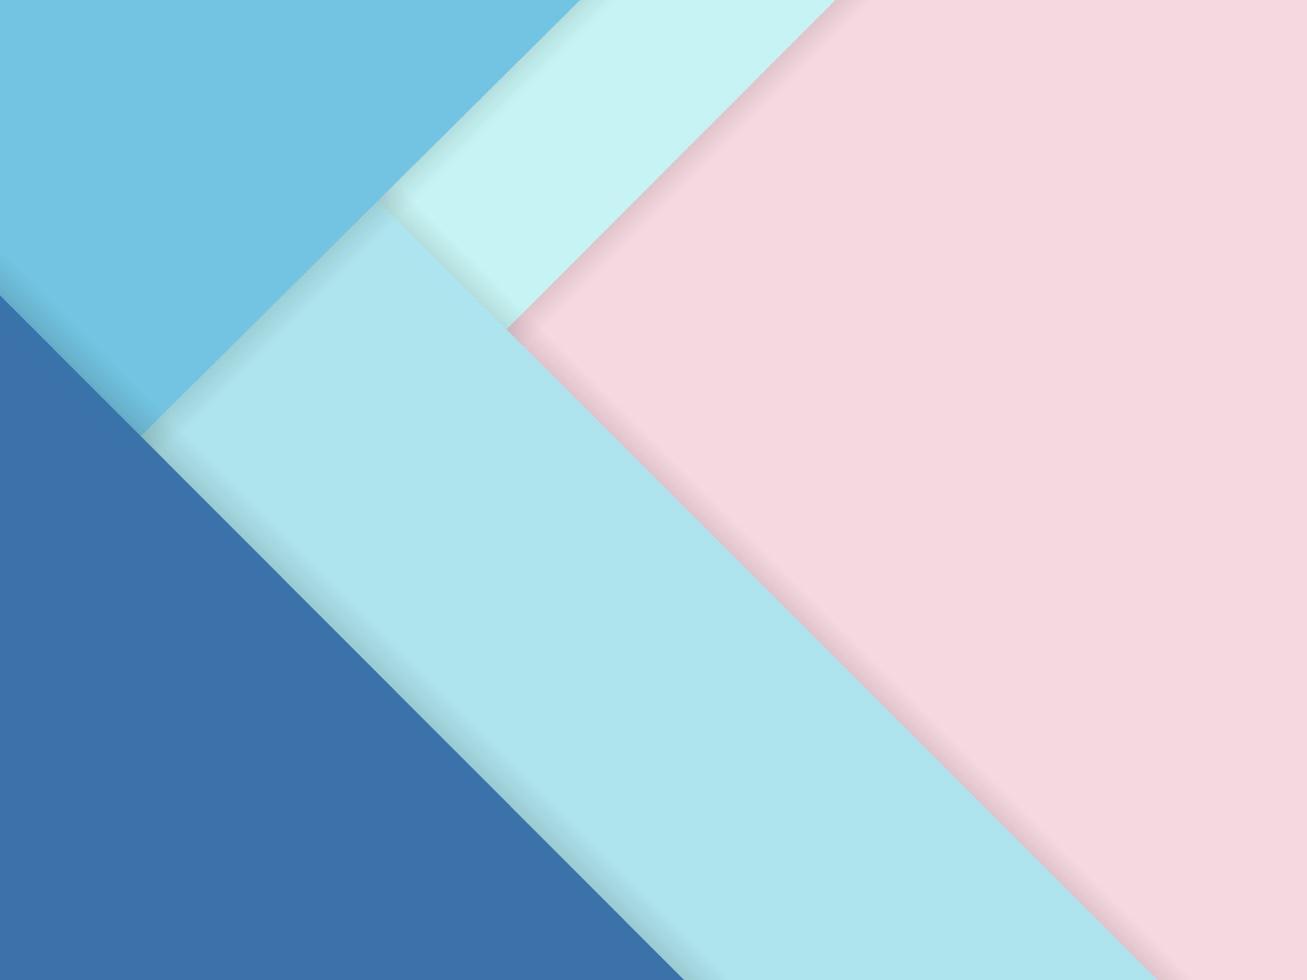 lo sfondo astratto di colore pastello con sovrapposizione di fogli di carta si sovrappone al tono blu sul rosa. per sfondo, banner, modello di presentazione. vettore